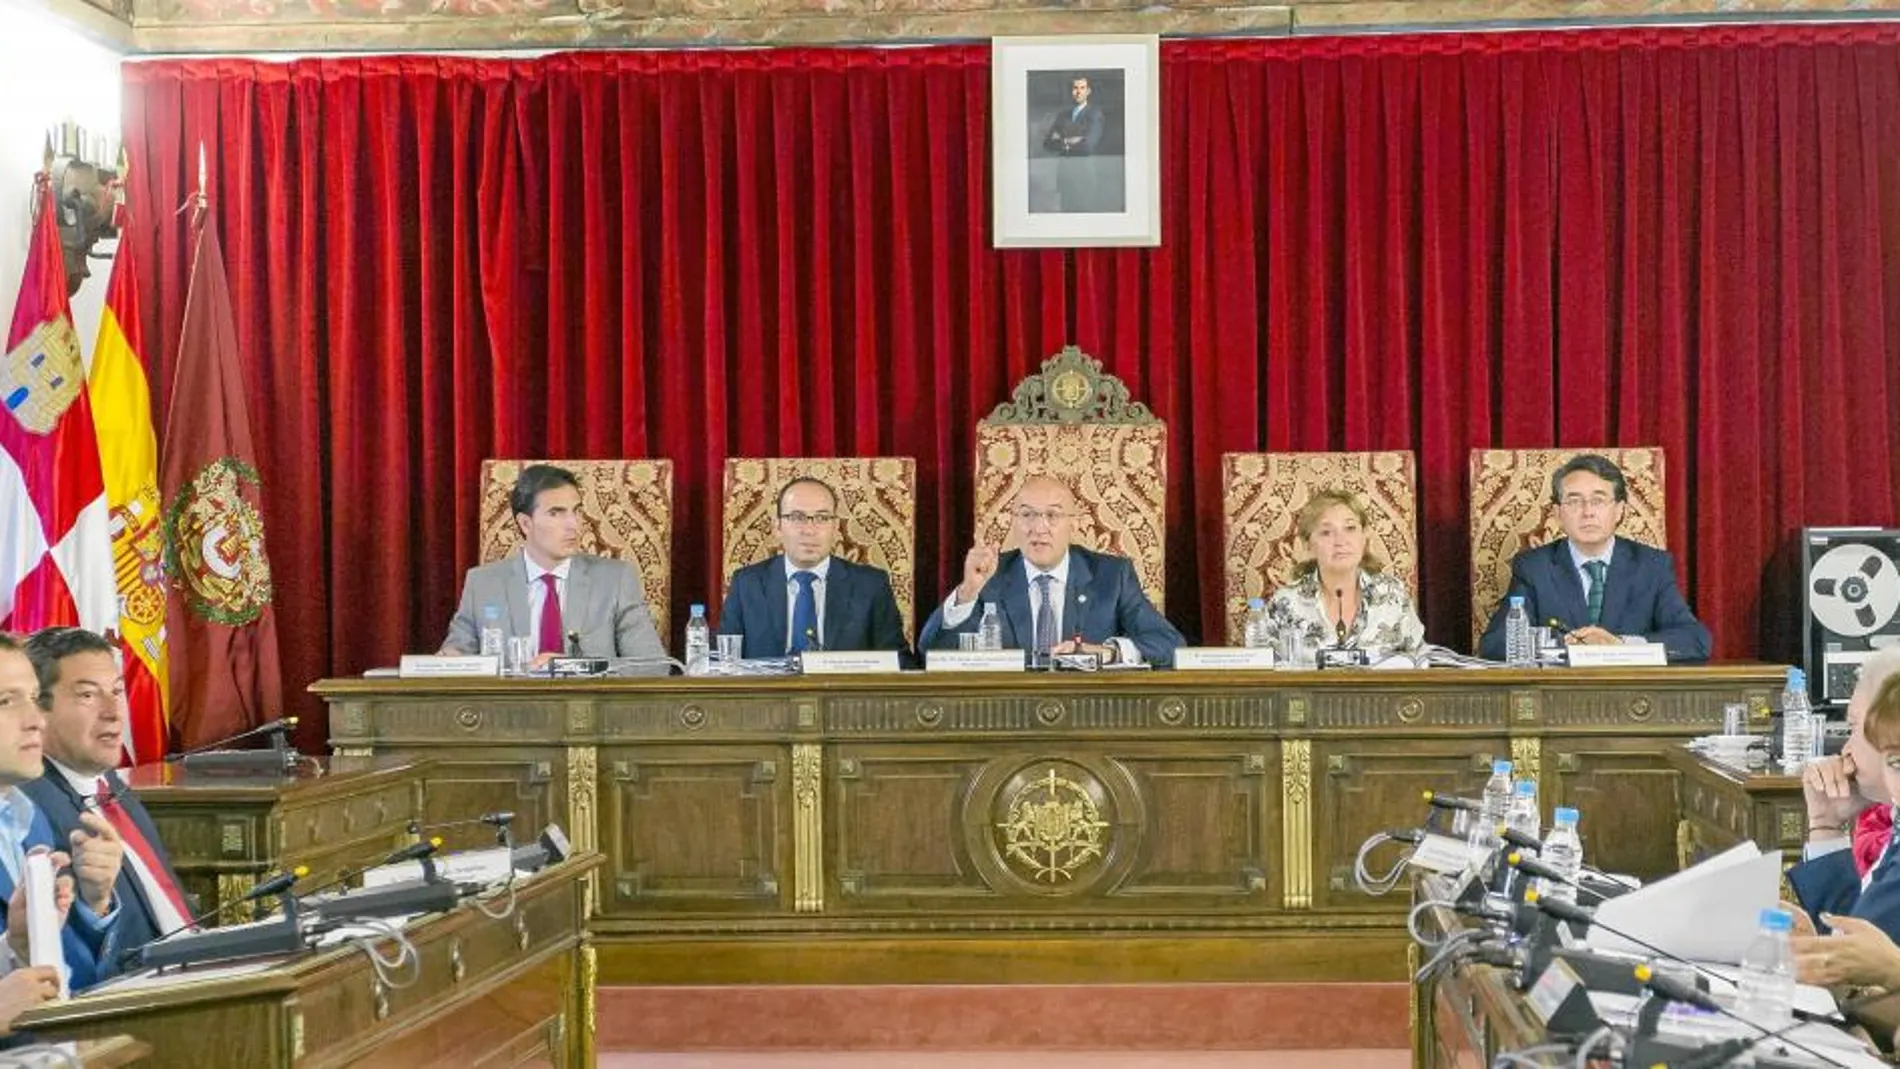 El presidente de la Diputación de Valladolid, Jesús julio Carnero, preside el Pleno de la institución